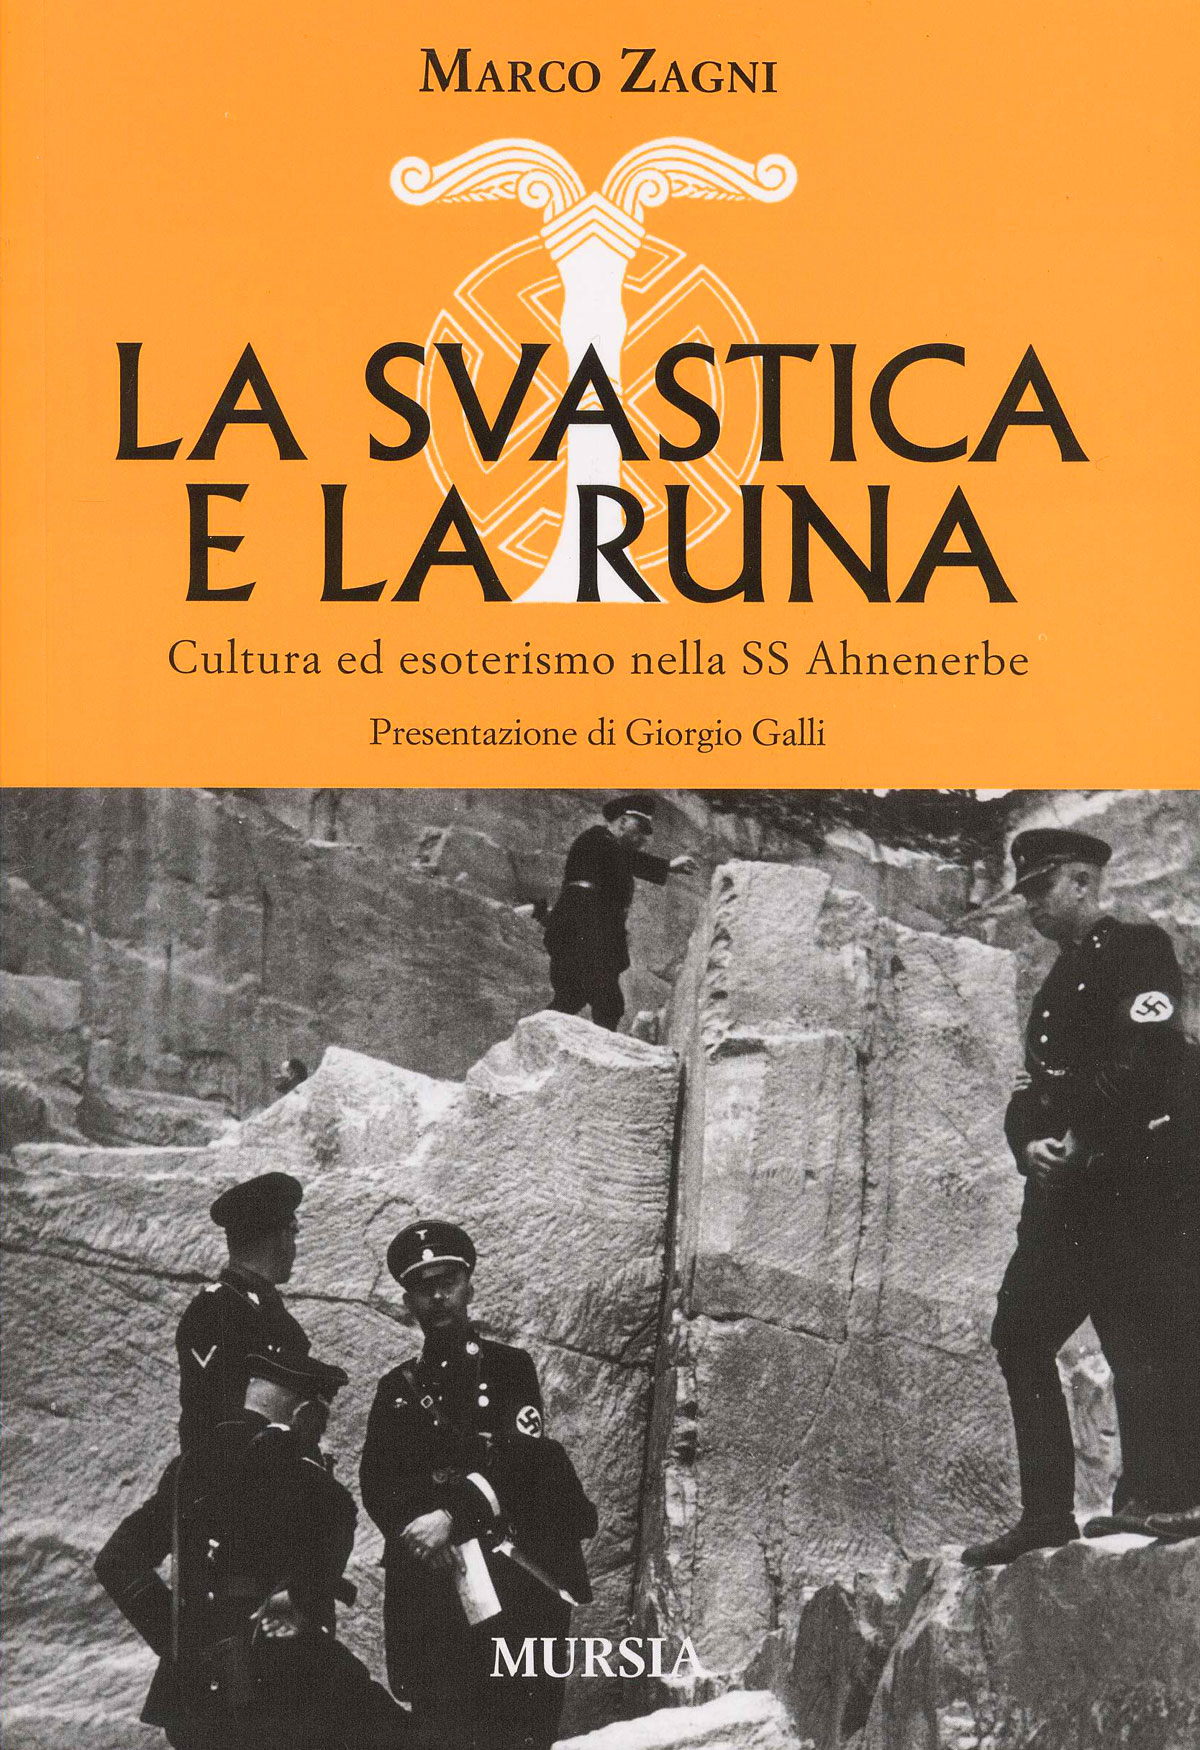 La svastica e la runa. Cultura ed esoterismo nella SS, di Marco Zagni (ed. Mursia)